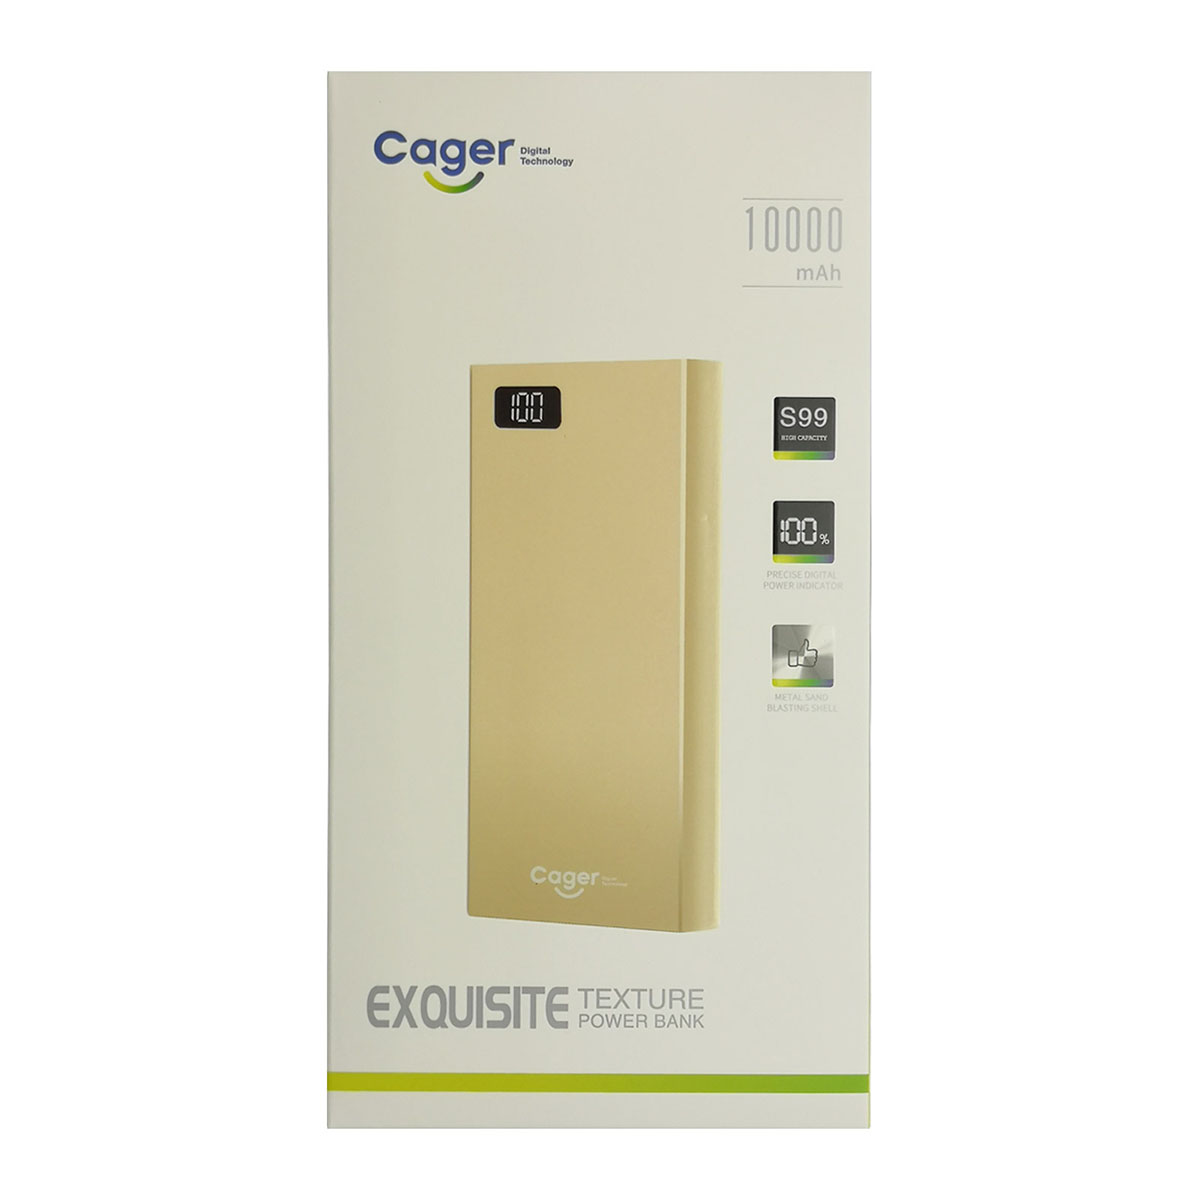 Внешний аккумулятор, Power Bank Cager S99, 10000 mAh, 2xUSB, цвет серебристый.